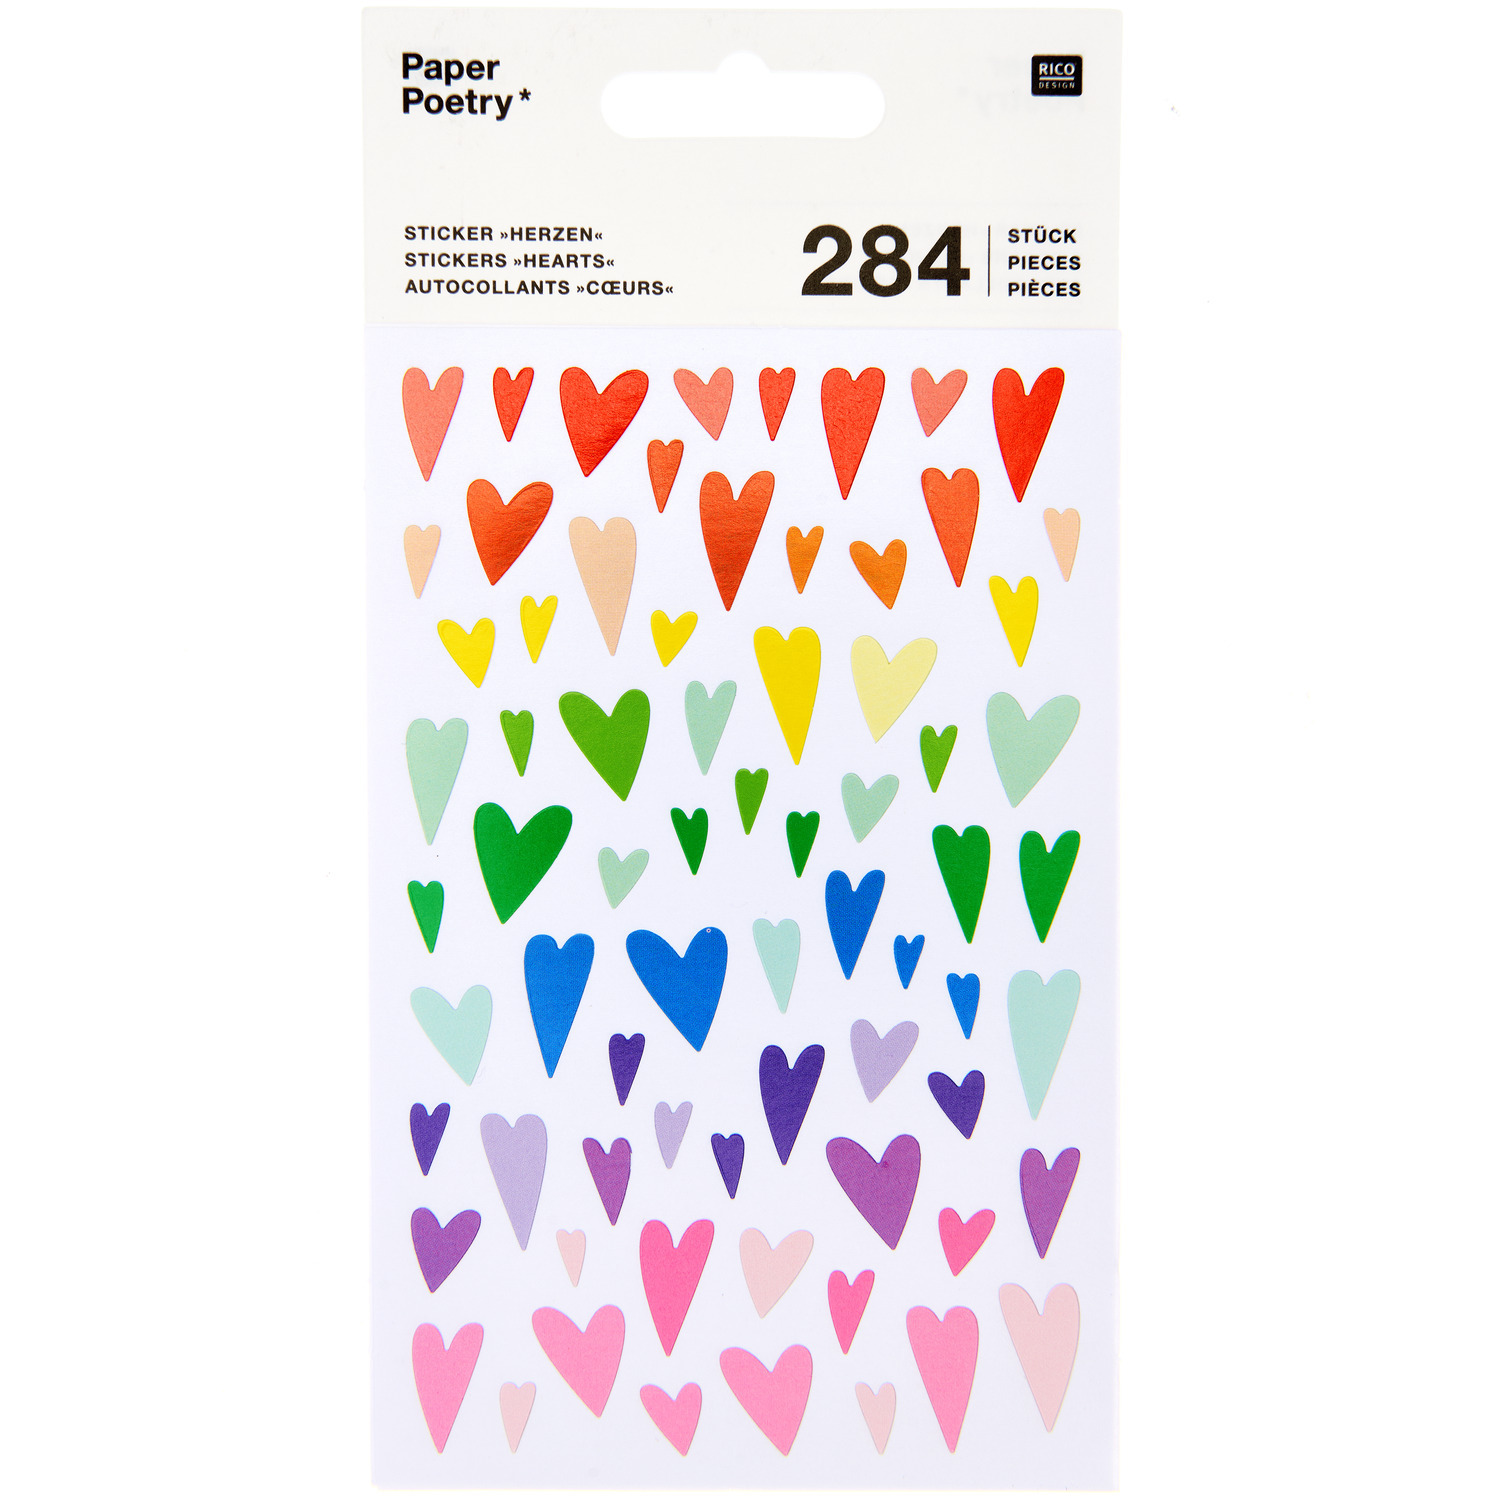 Paper Poetry Sticker Herzen mehrfarbig verformt 10x19cm 4 Bogen